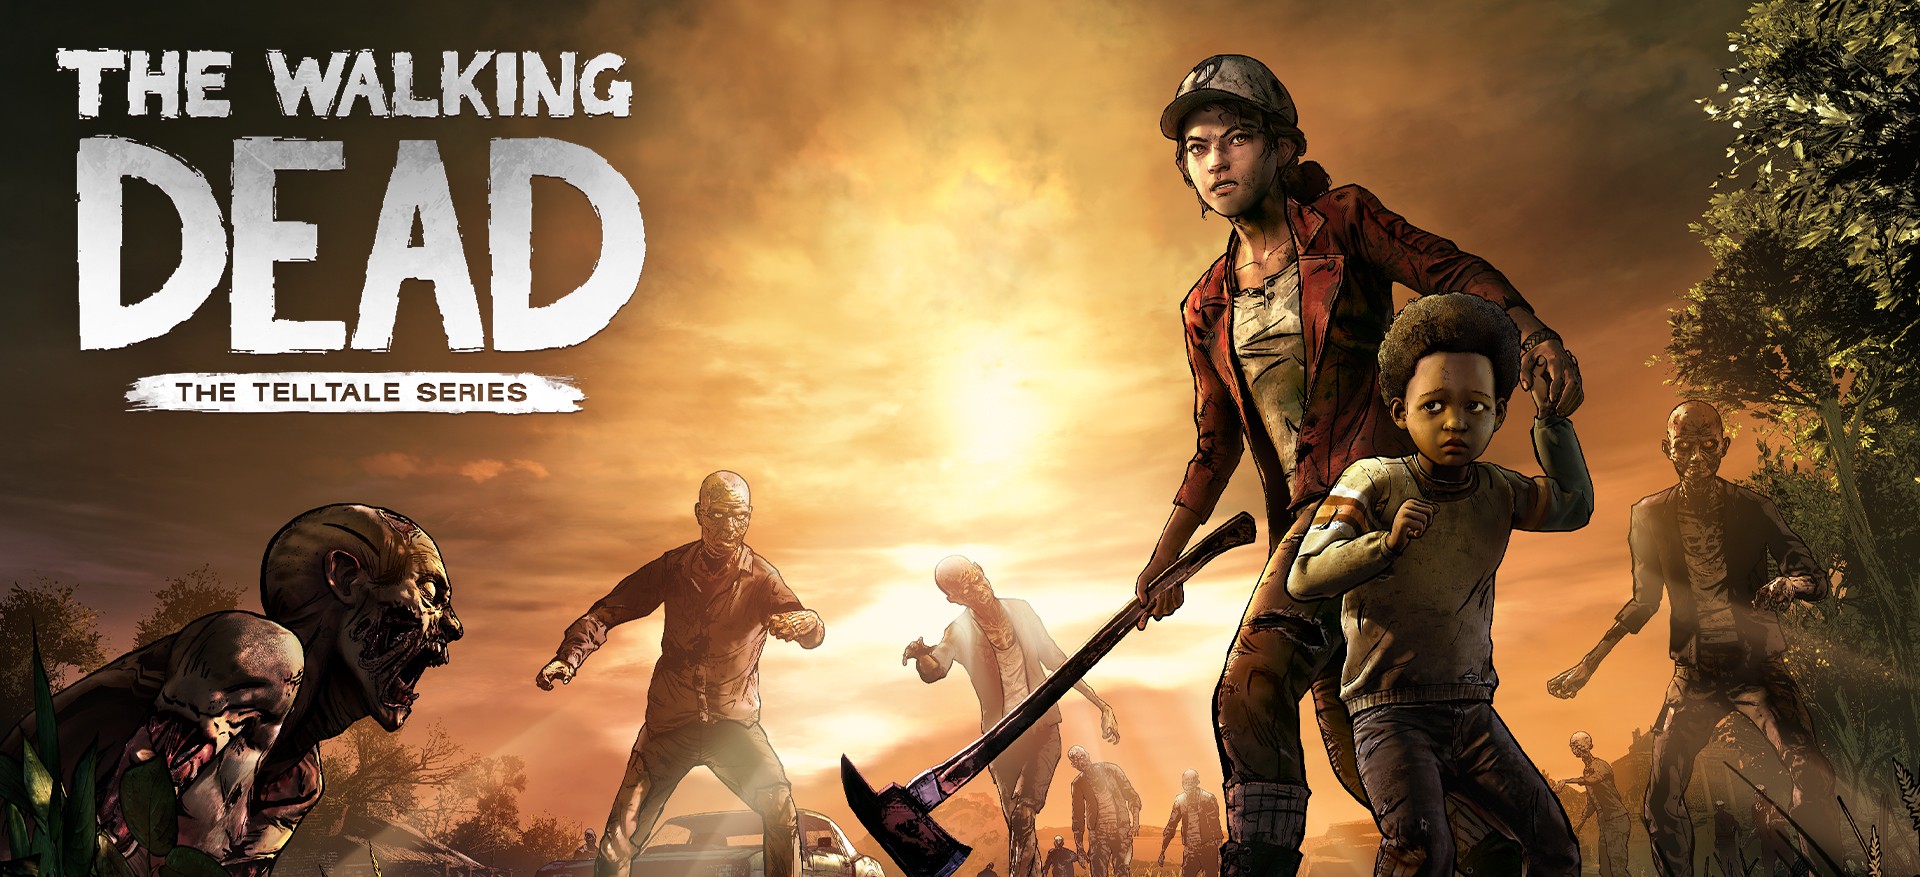 ก่อนจะเป็น The Walking Dead เดิมที Telltale Games วางแผนทำเกมในโลก Left 4 Dead